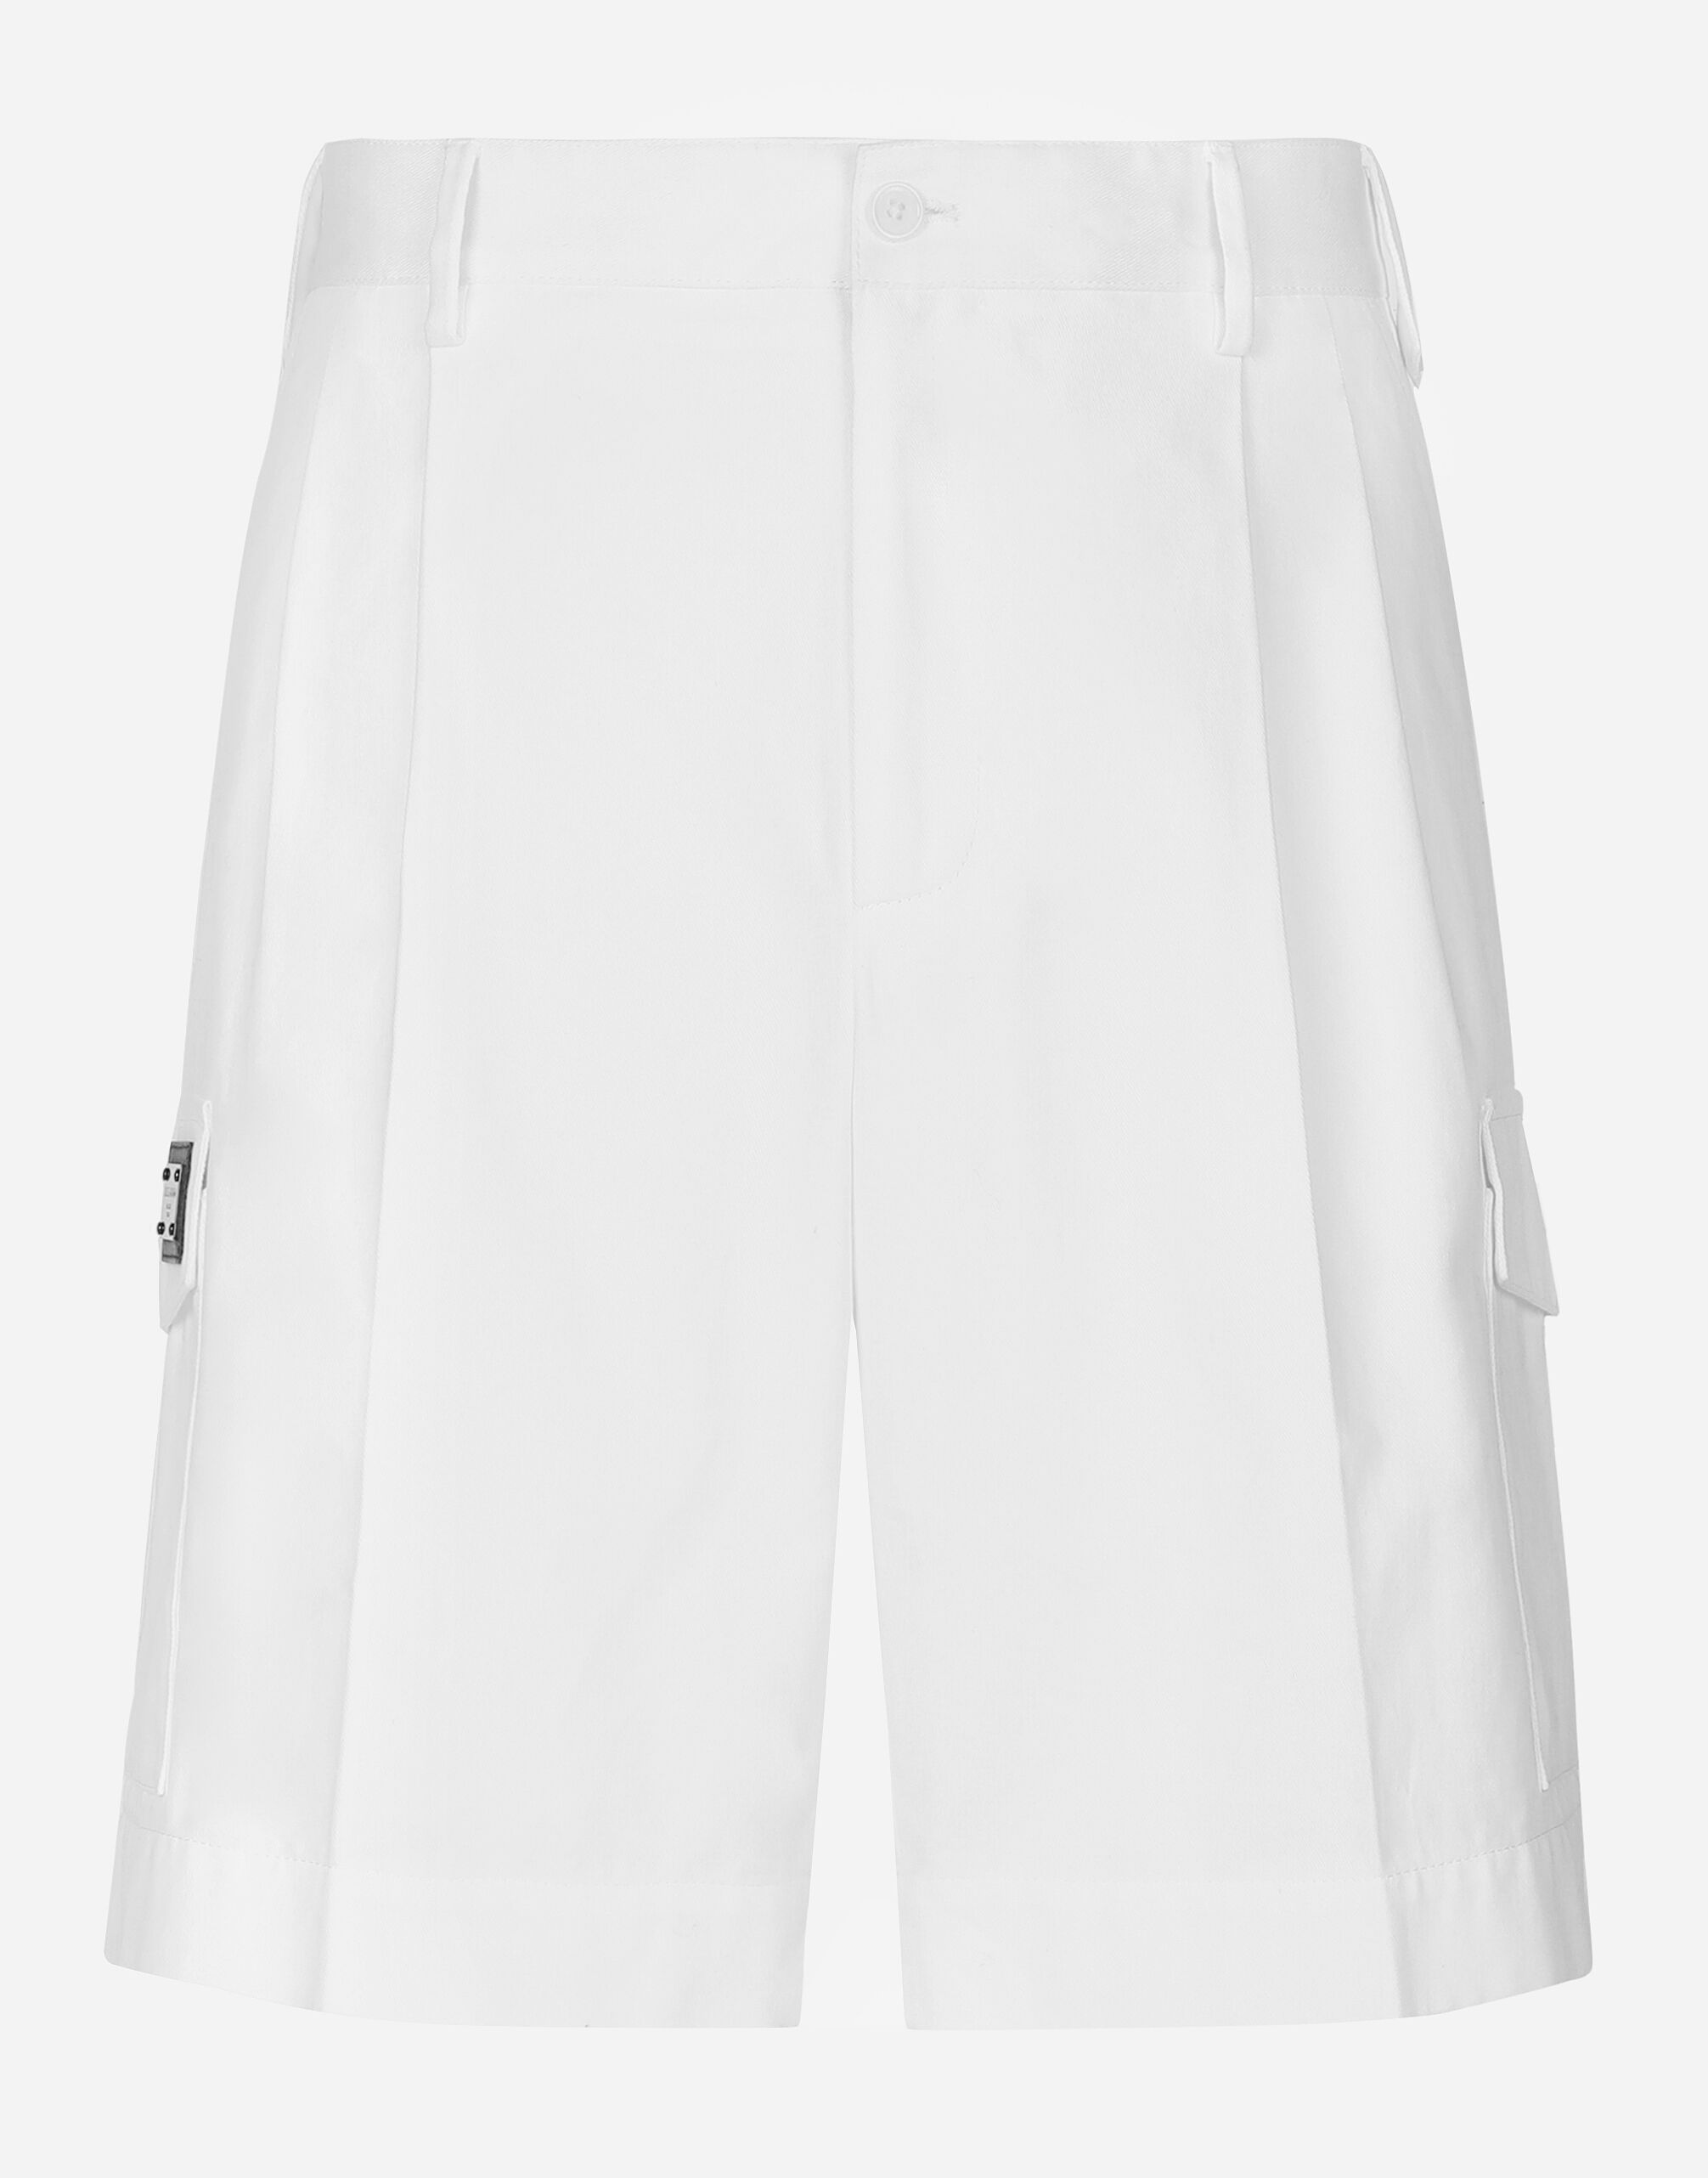 Dolce & Gabbana Cotton gabardine cargo shorts with logo tag Black GP0D4TFU5PY